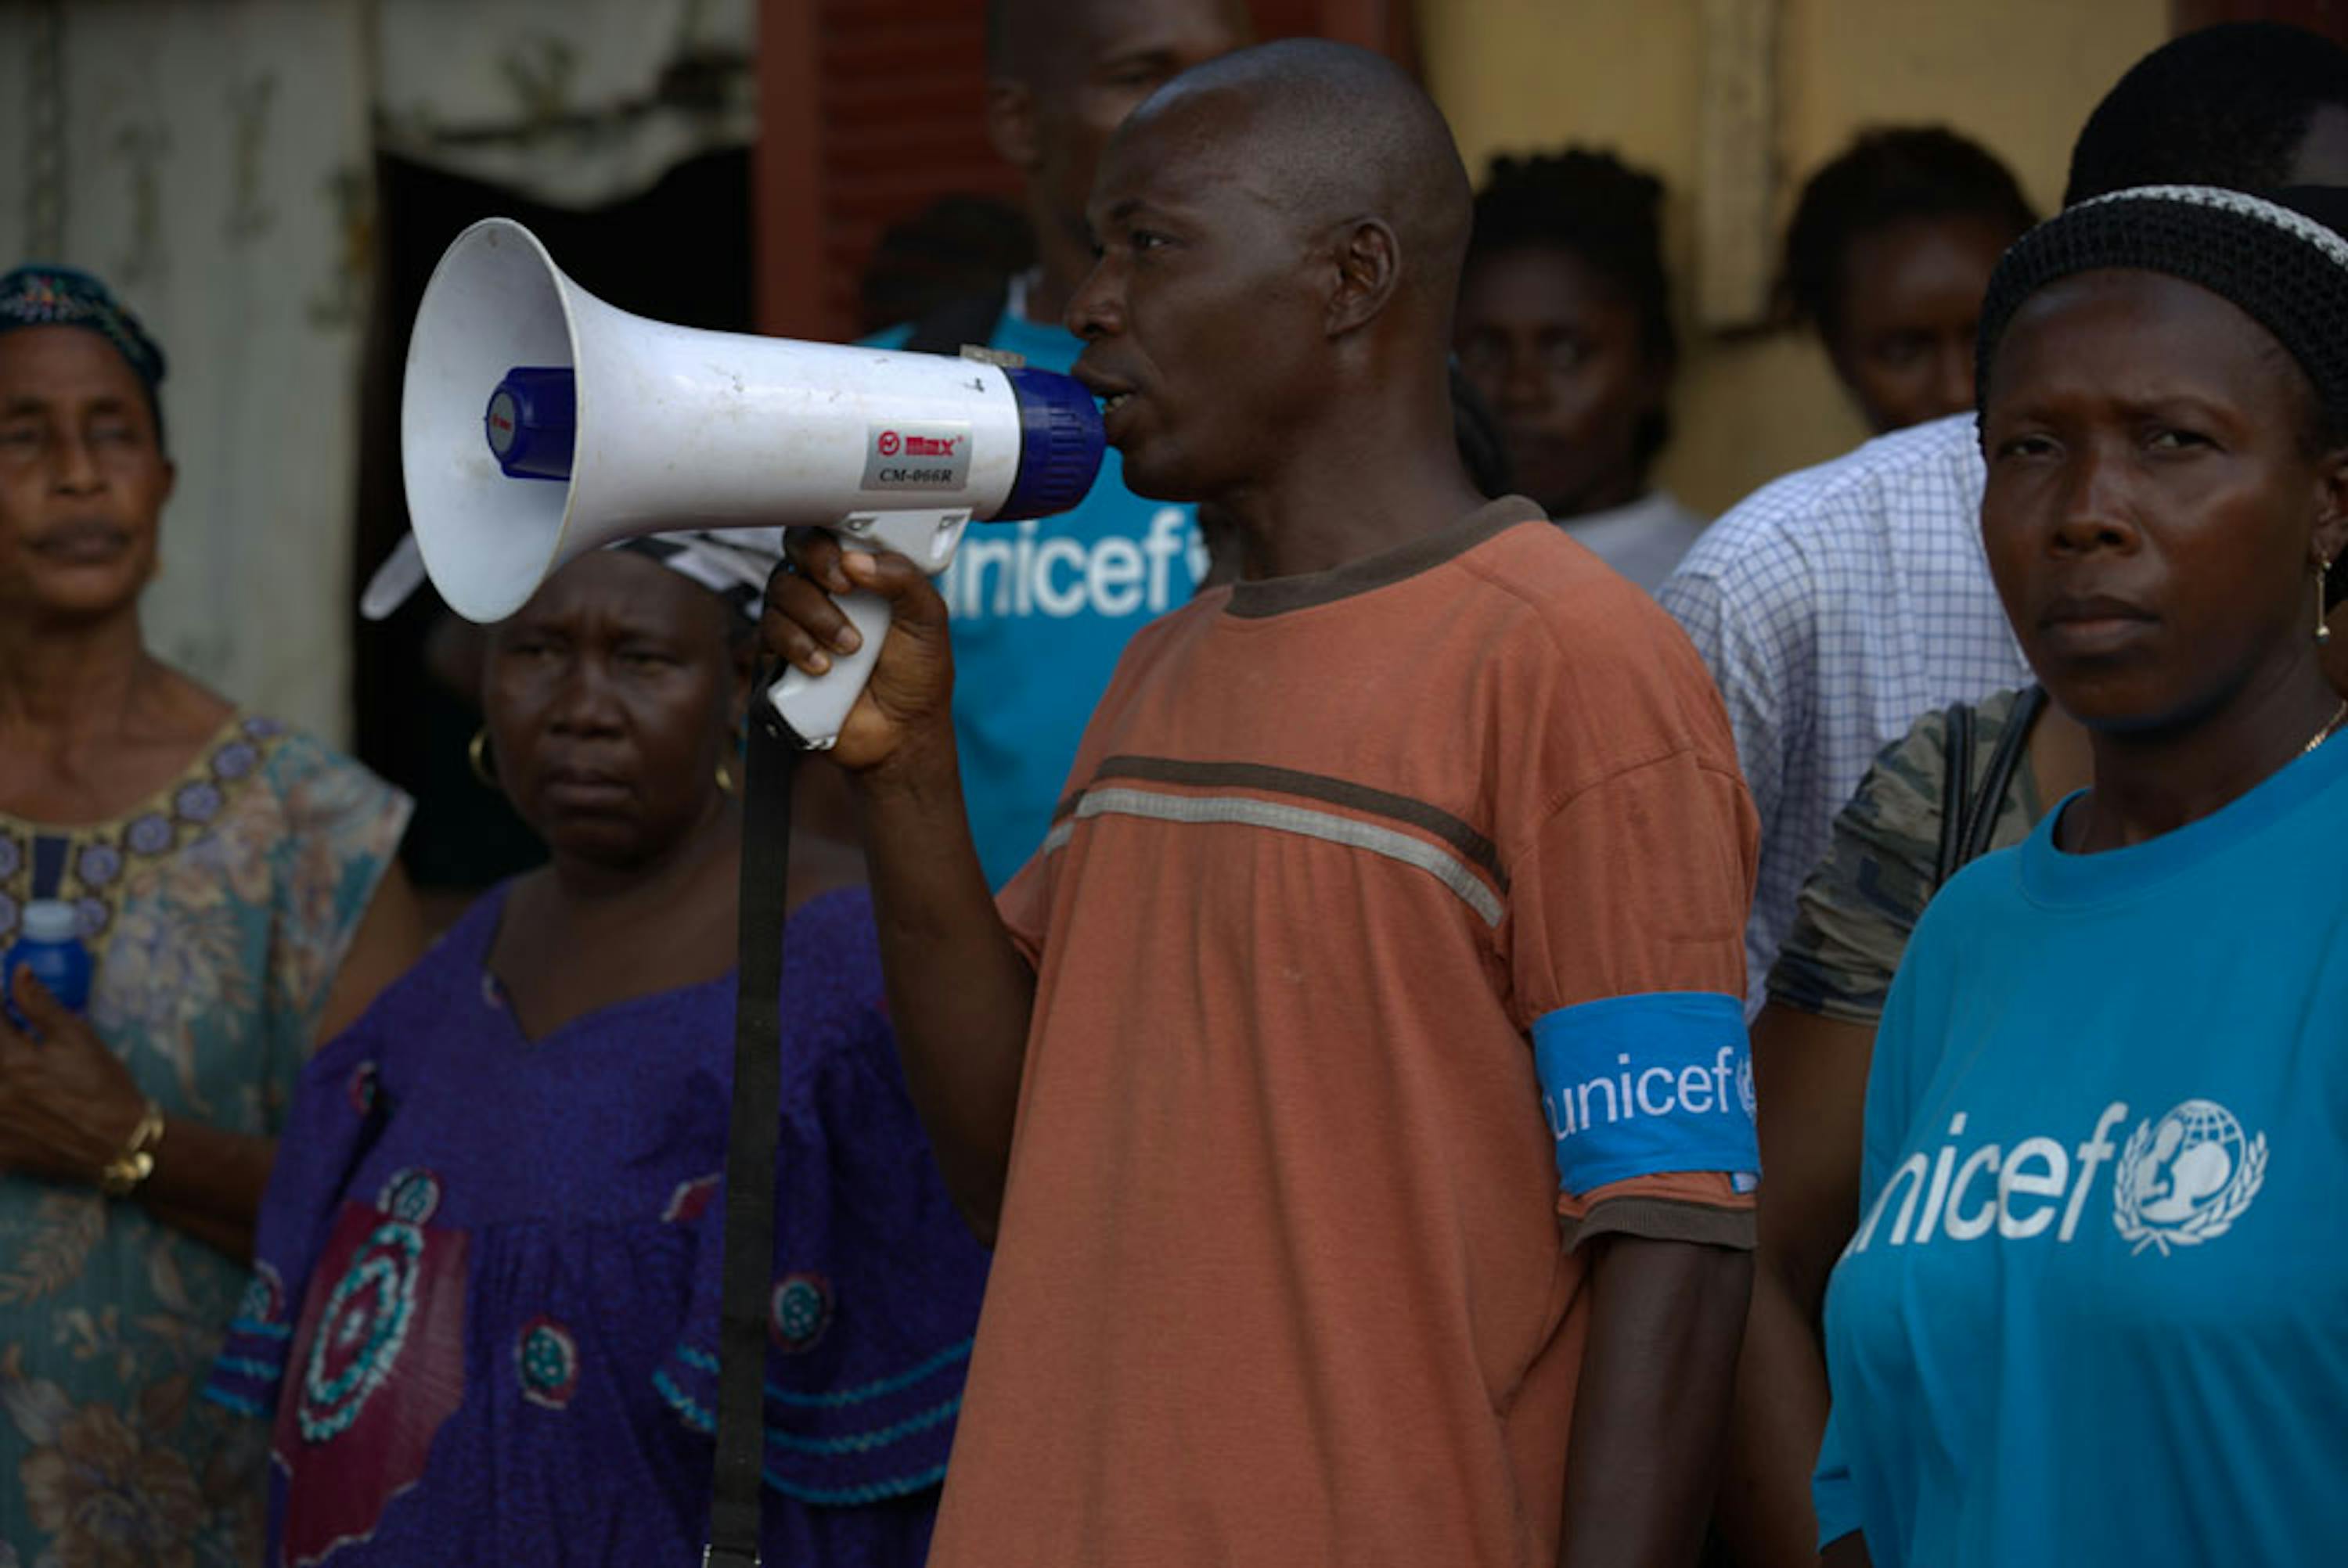 Volontari della ONG locale AJCOM impegnati in un'attività di informazione pubblica su come evitare il contagio di Ebola in una piazza di Conakry (Guinea). L'attività è svolta sotto l'egida dell'UNICEF - ©UNICEF/NYHQ2014-1529/Timothy La Rose